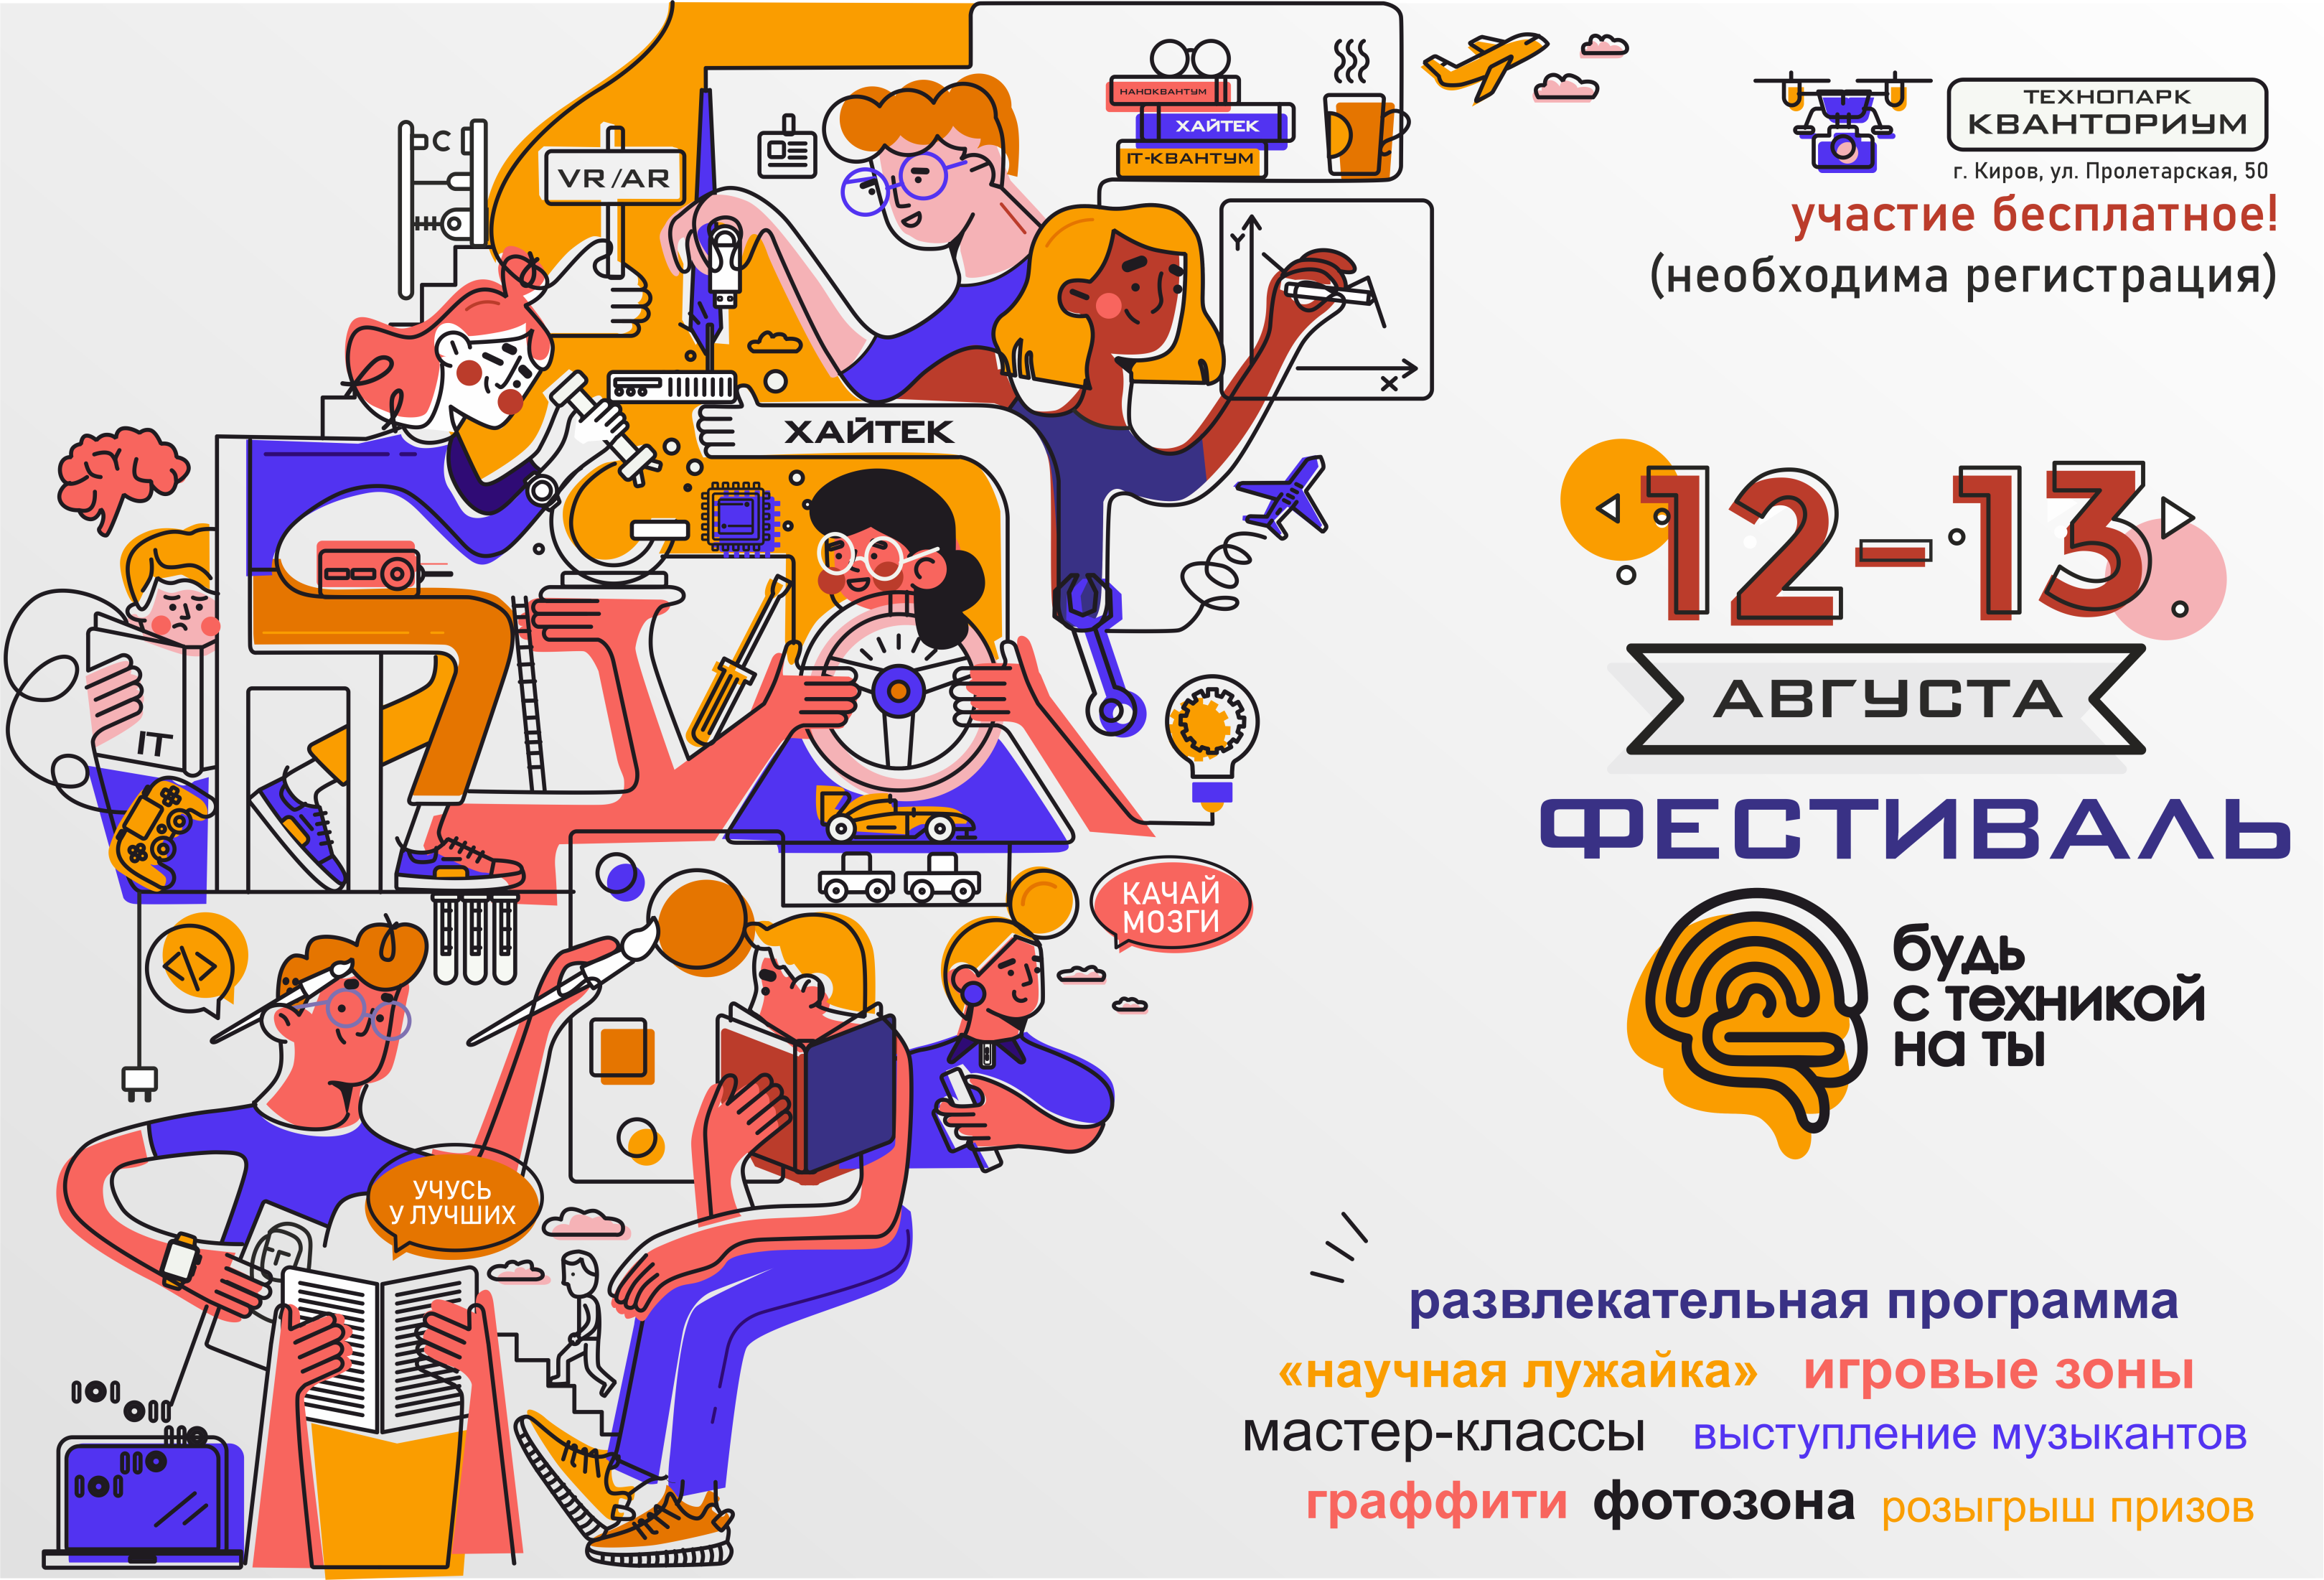 «Кванториум» г. Кирова приглашает на фестиваль «Будь с техникой на ты»!